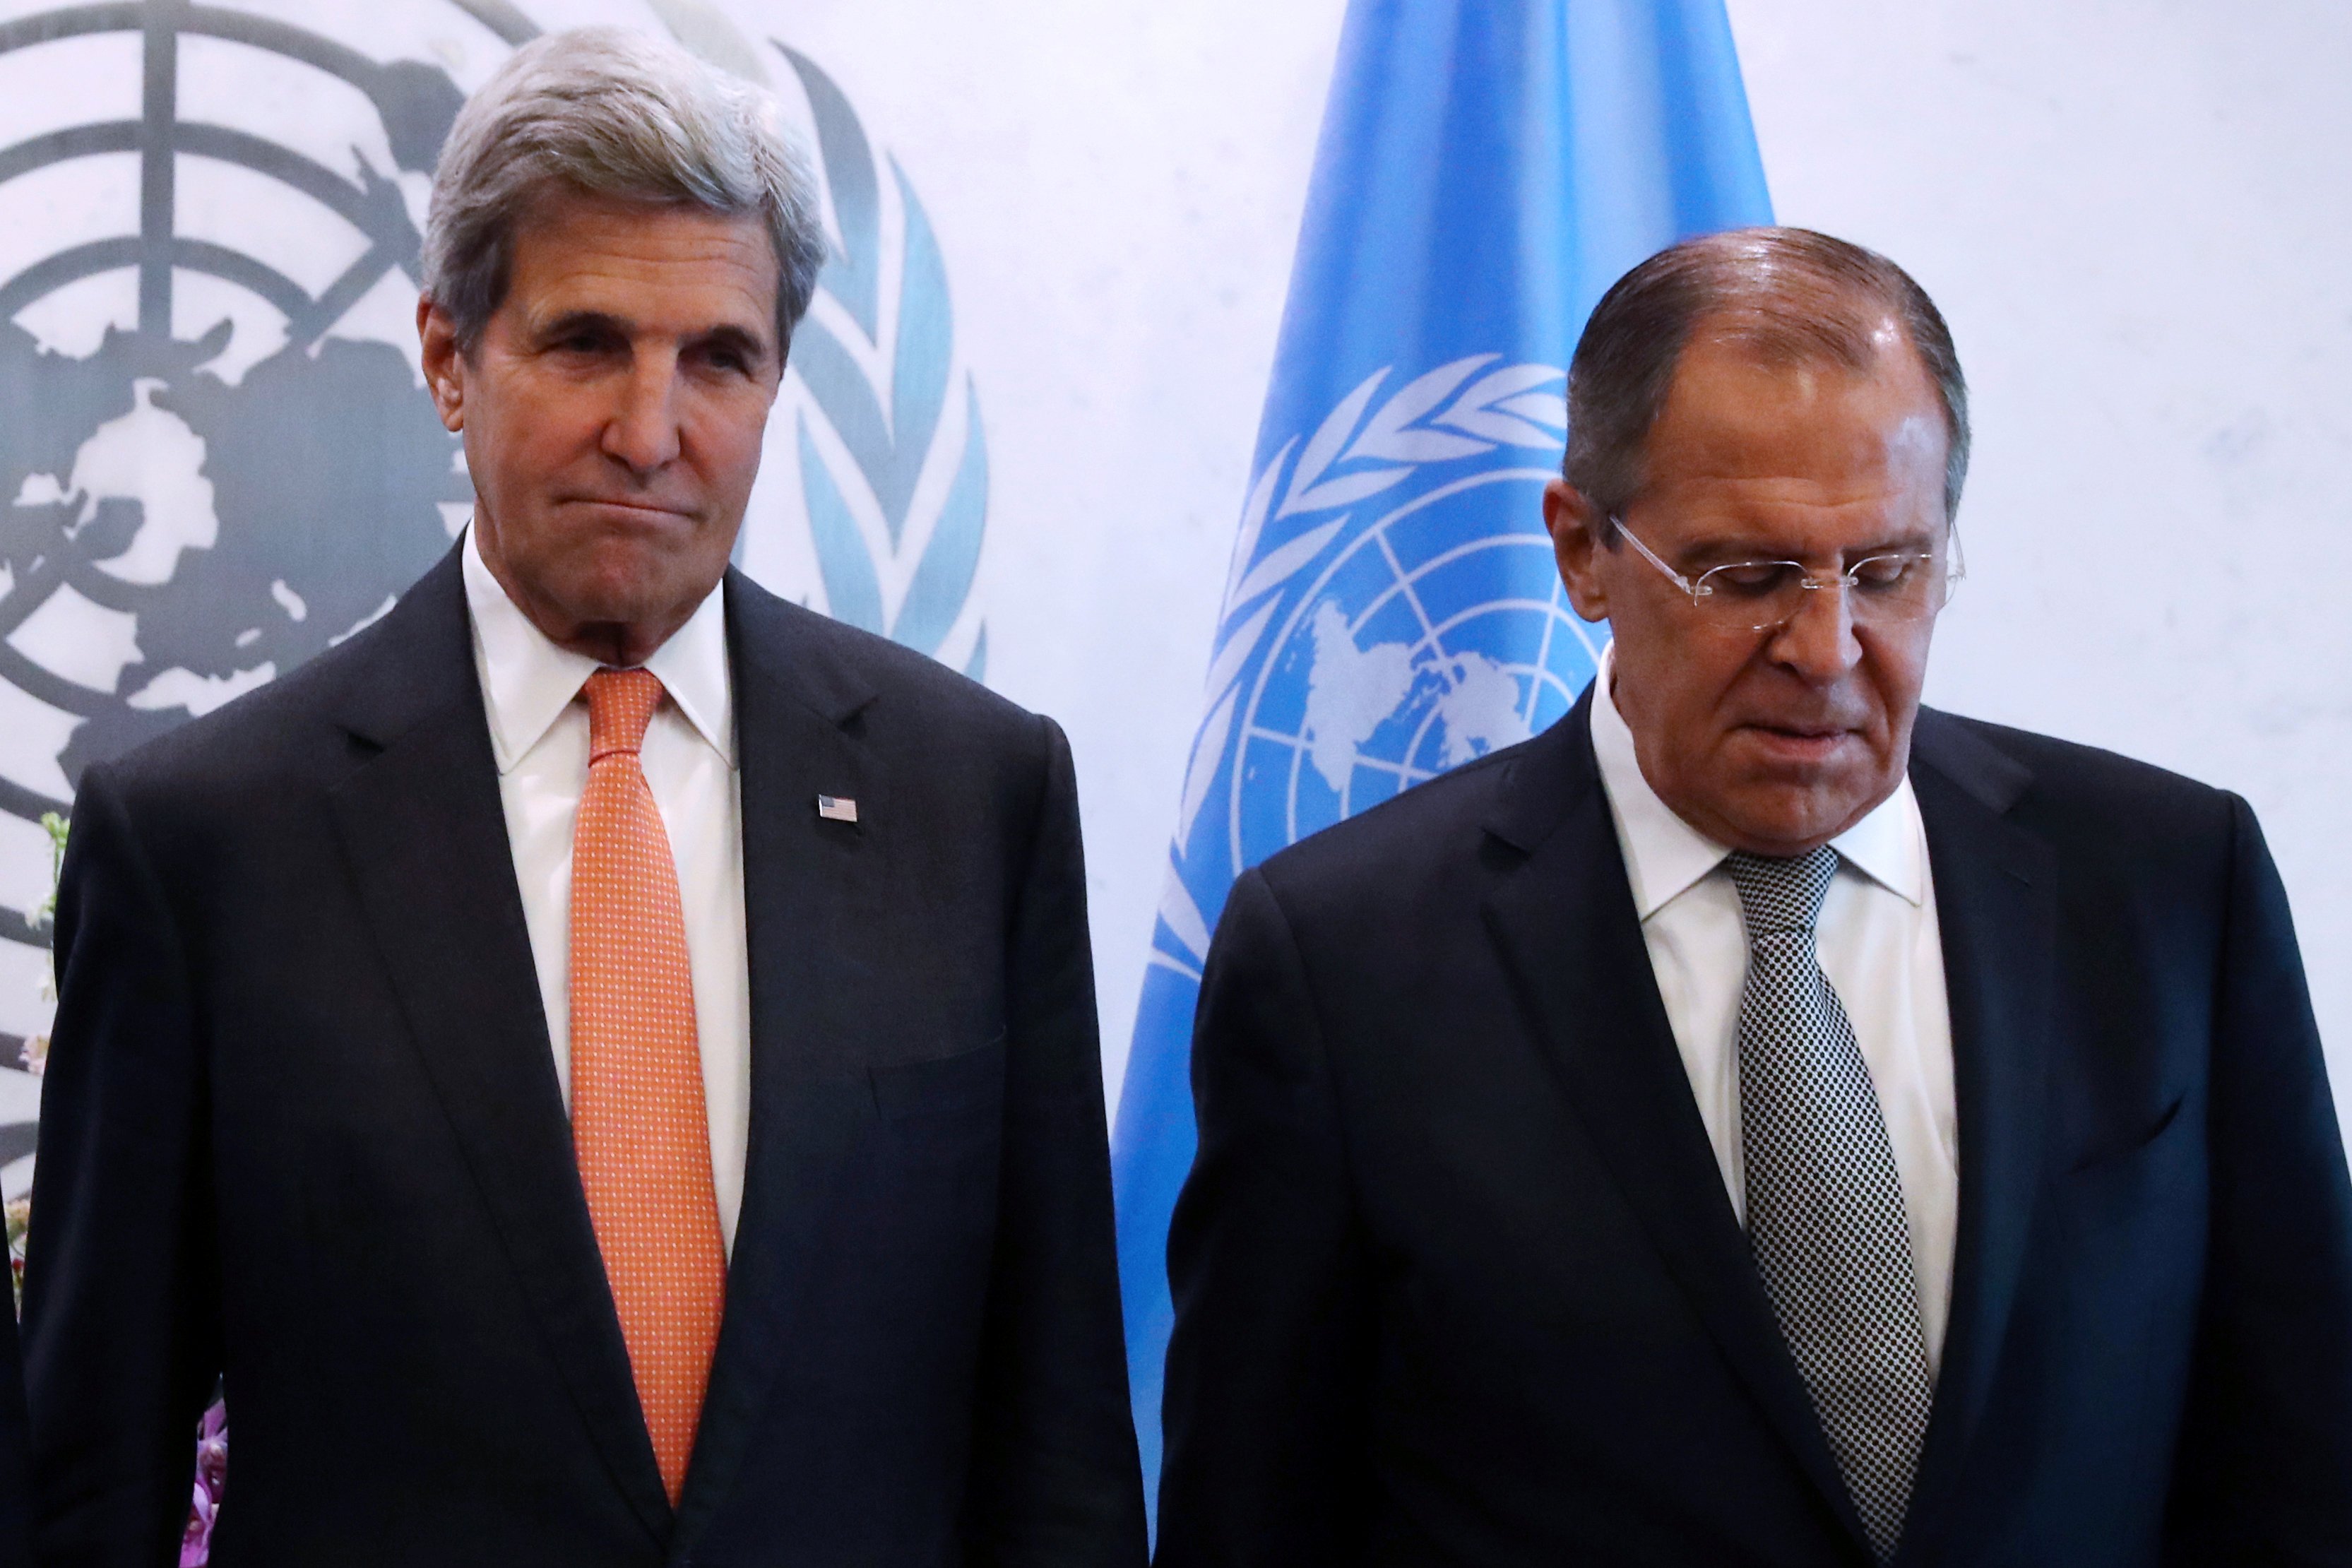 EU, "a punto de suspender" diálogo con Rusia sobre Siria: Kerry